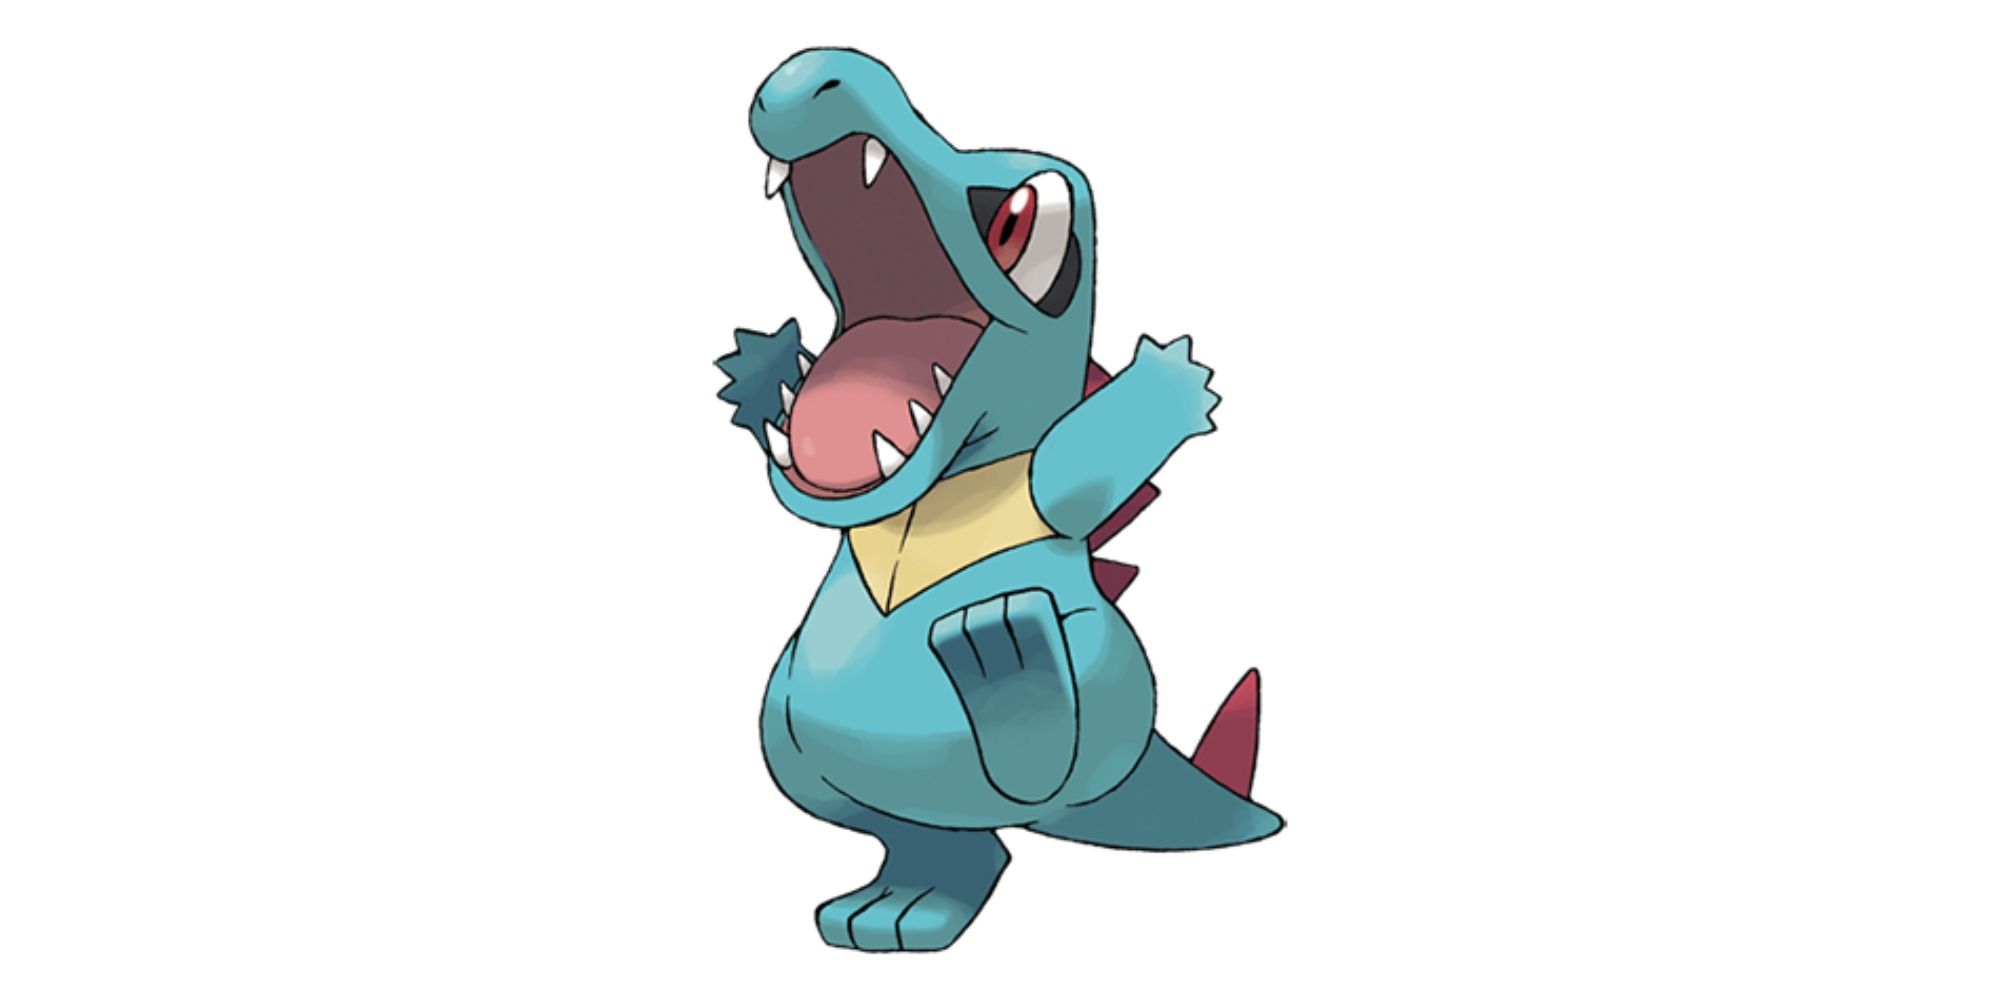 Hard to Find Pokémon in Pokémon GO - Totodile - Water-type Pokémon smiles at people